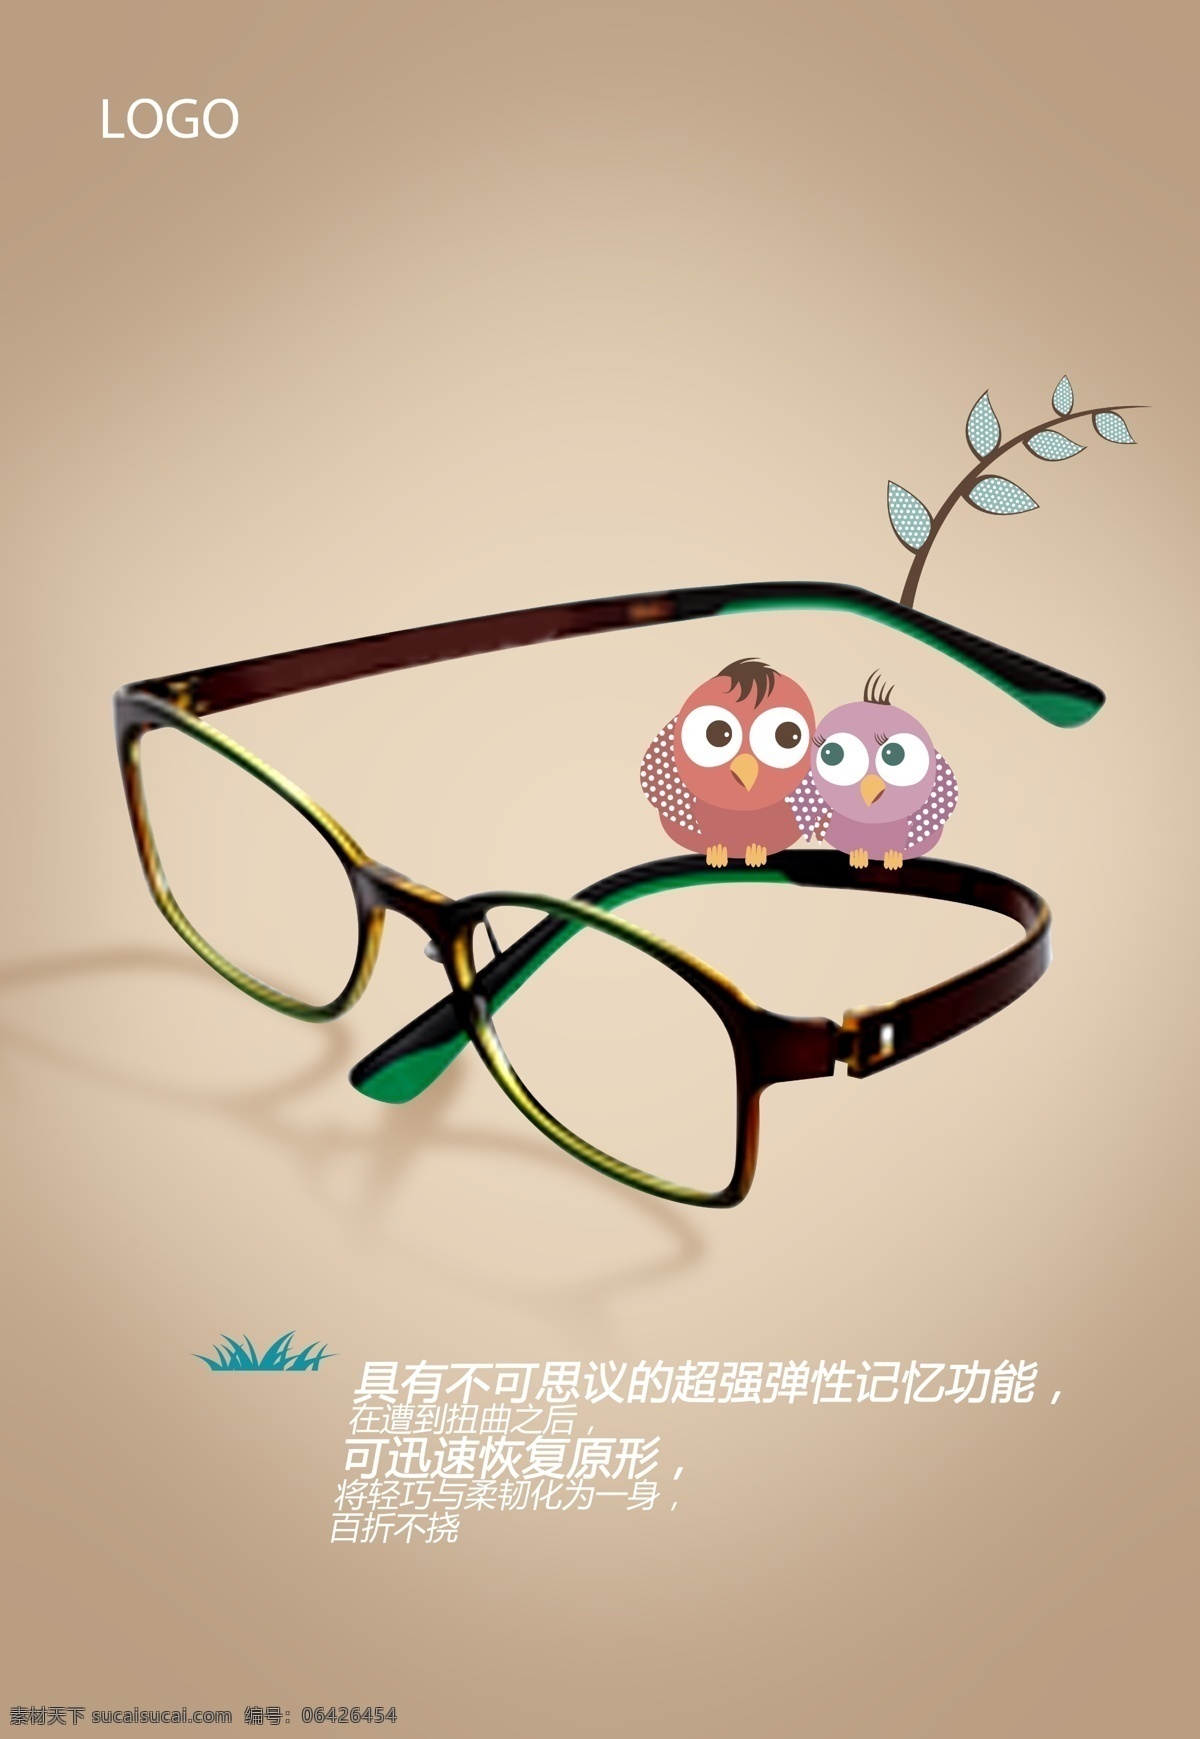 眼镜广告 柔韧 眼镜 广告 海报 镜架 舒适 耐用 广告设计模板 源文件